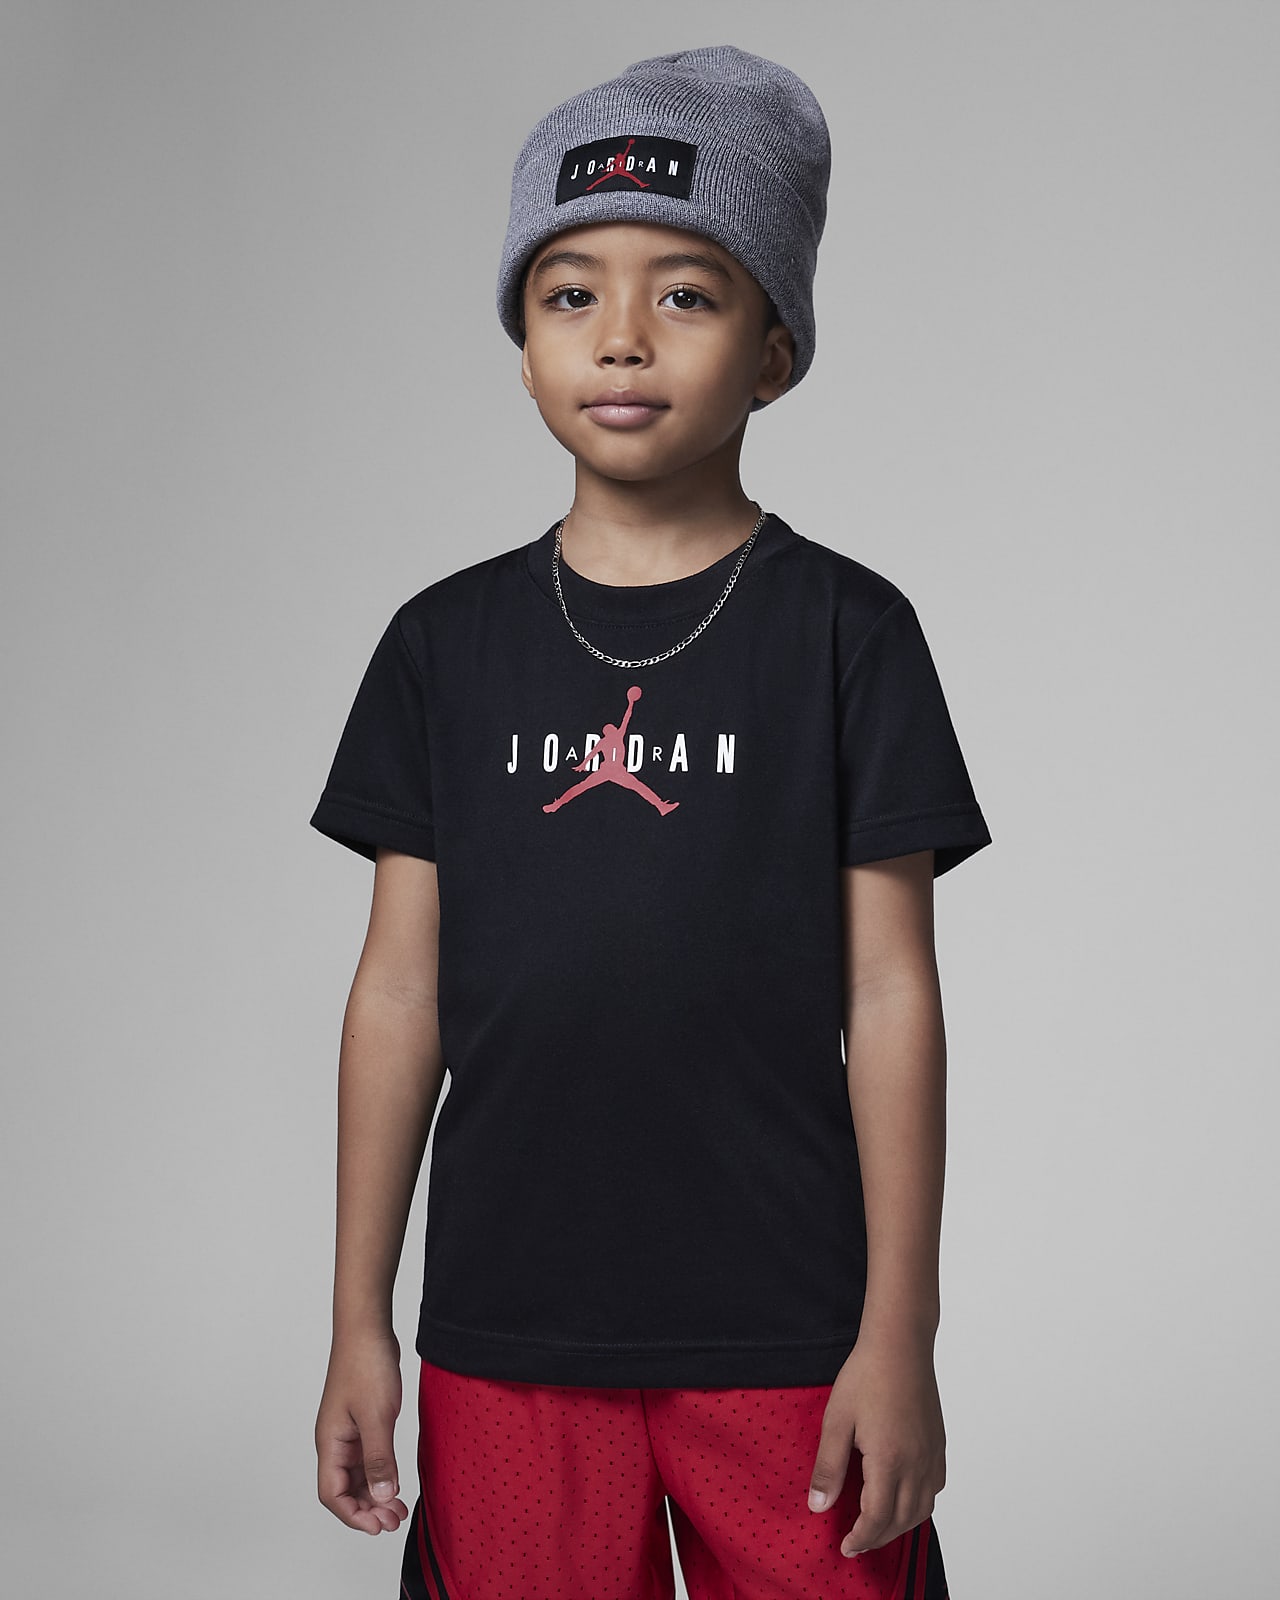 Rechazado herida Oceano Jordan Camiseta con materiales sostenibles - Niño/a pequeño/a. Nike ES